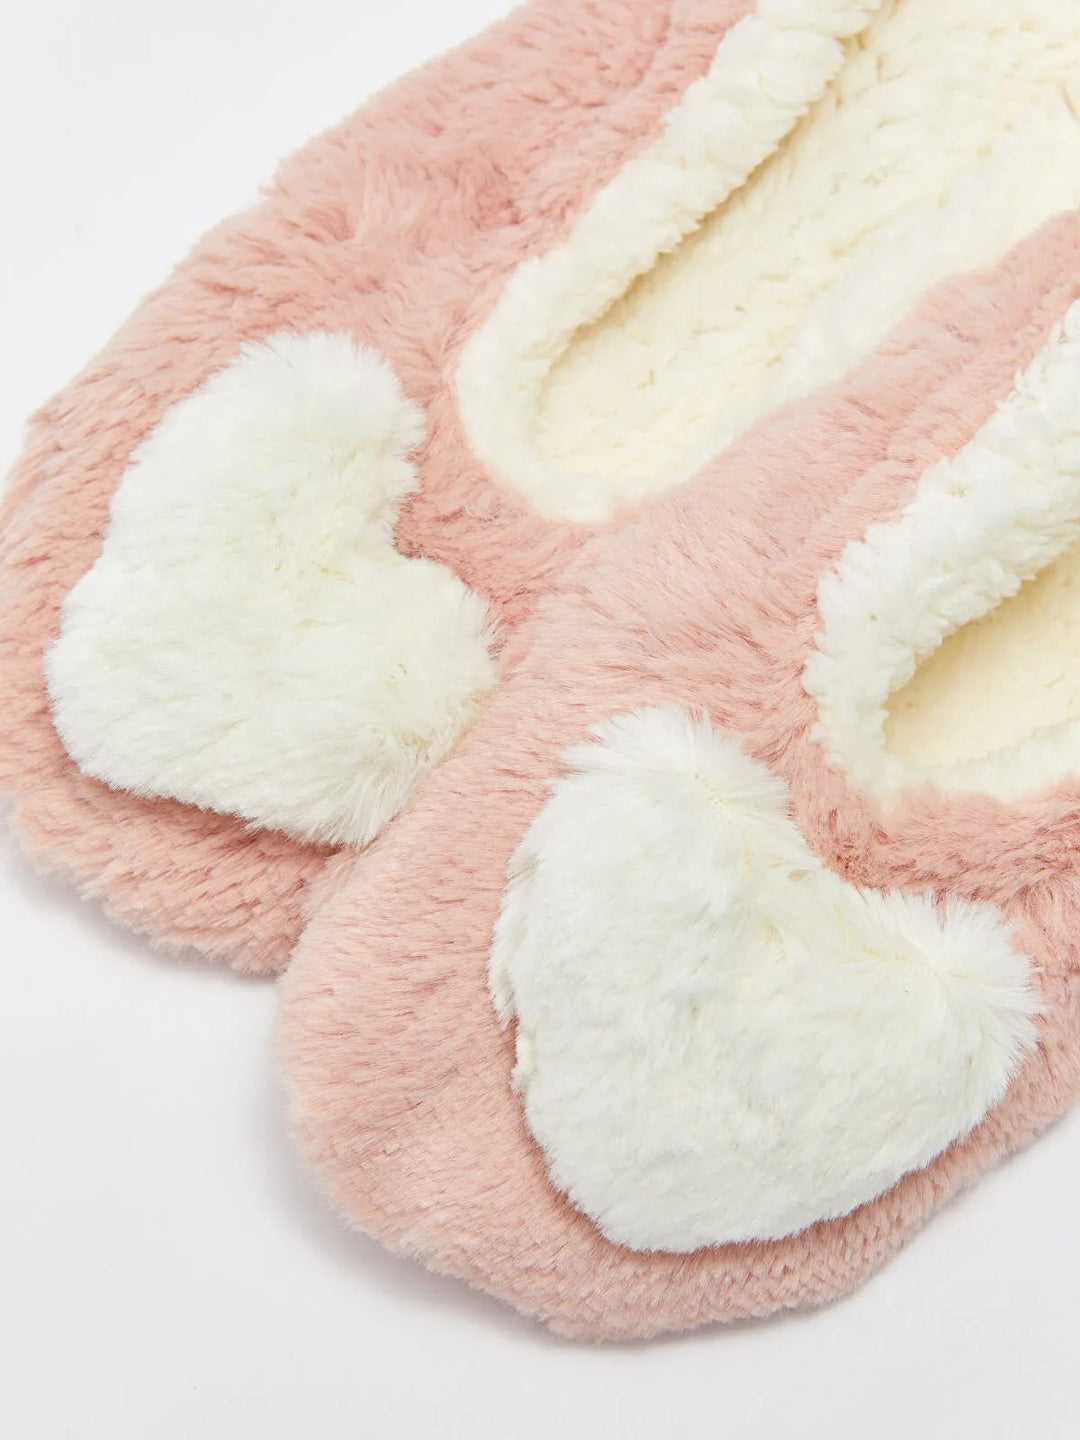 Heart Detailed Plush Women Home Socks